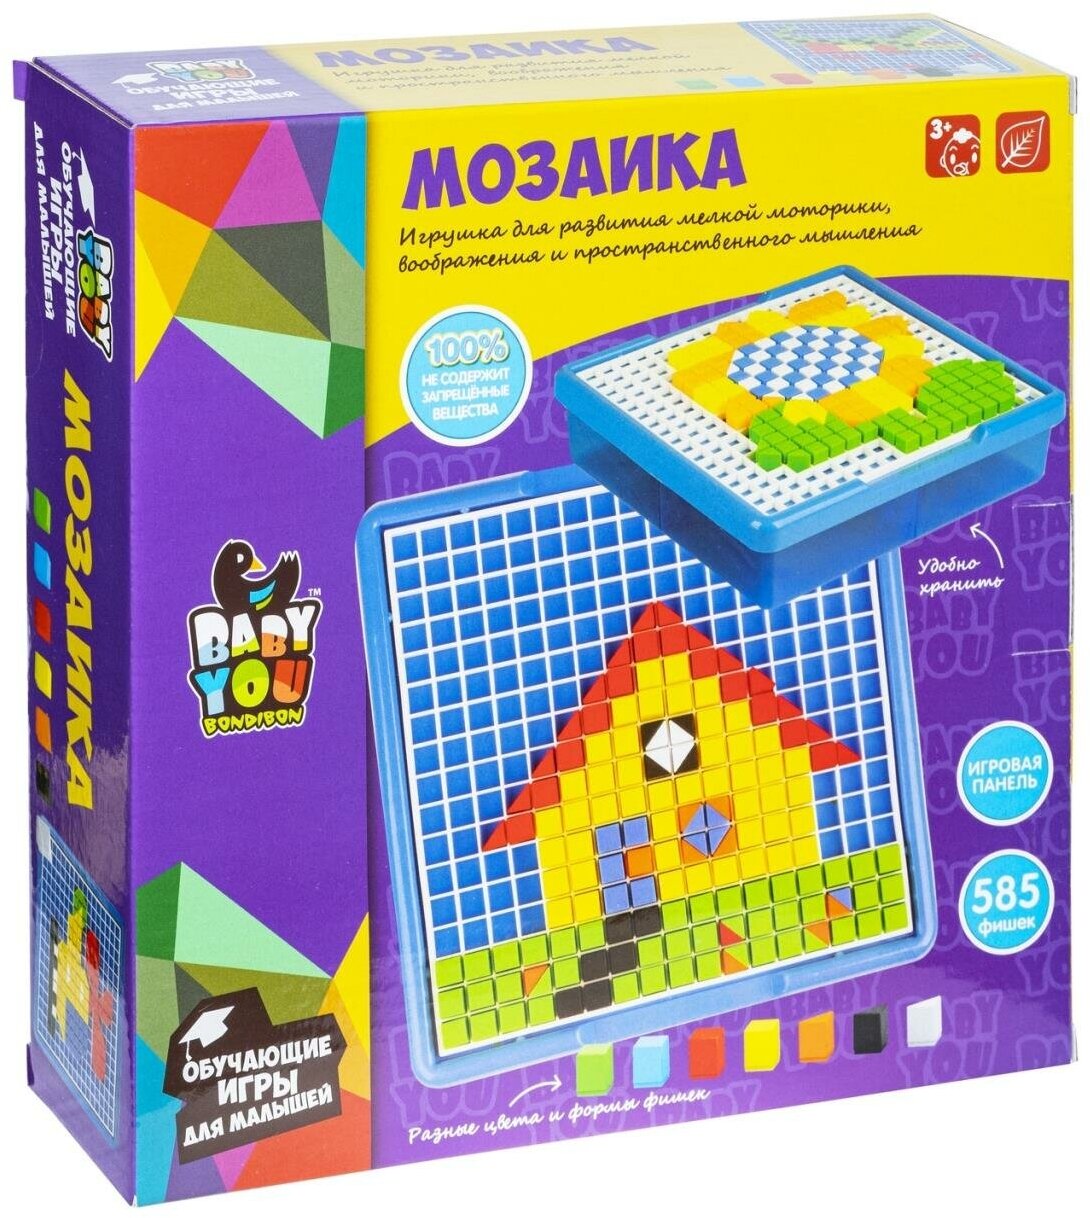 Мозаика для малышей Bondibon, пиксельная, 585 дет, BOX